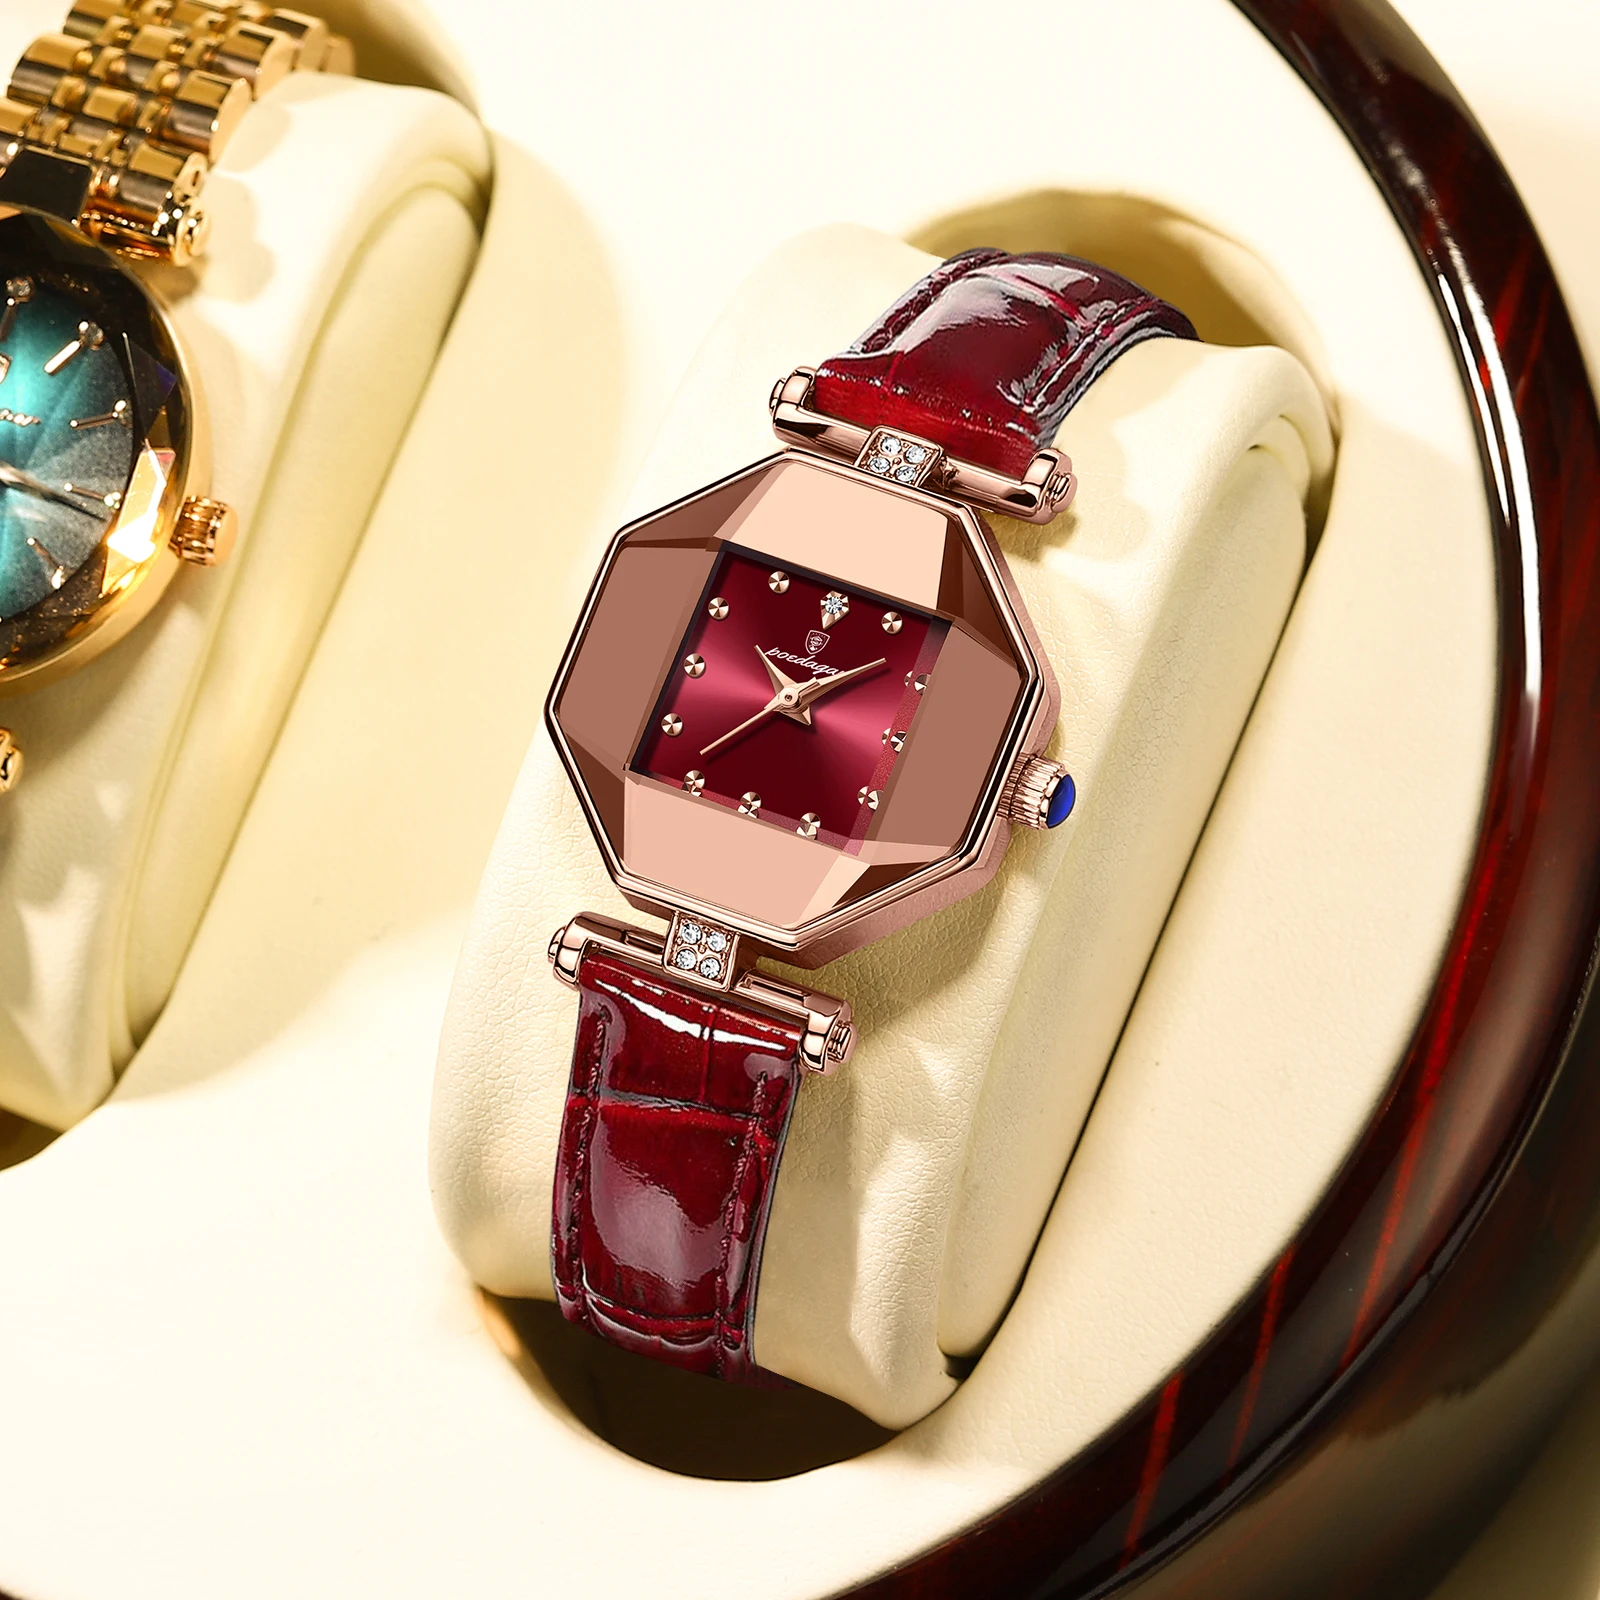 POEDAGAR Women Watch Fashion Leather Quartz Watches Waterproof Rose Gold Top Swiss Brand Luxury Ladies Wristwatches Clock Gift enlarge